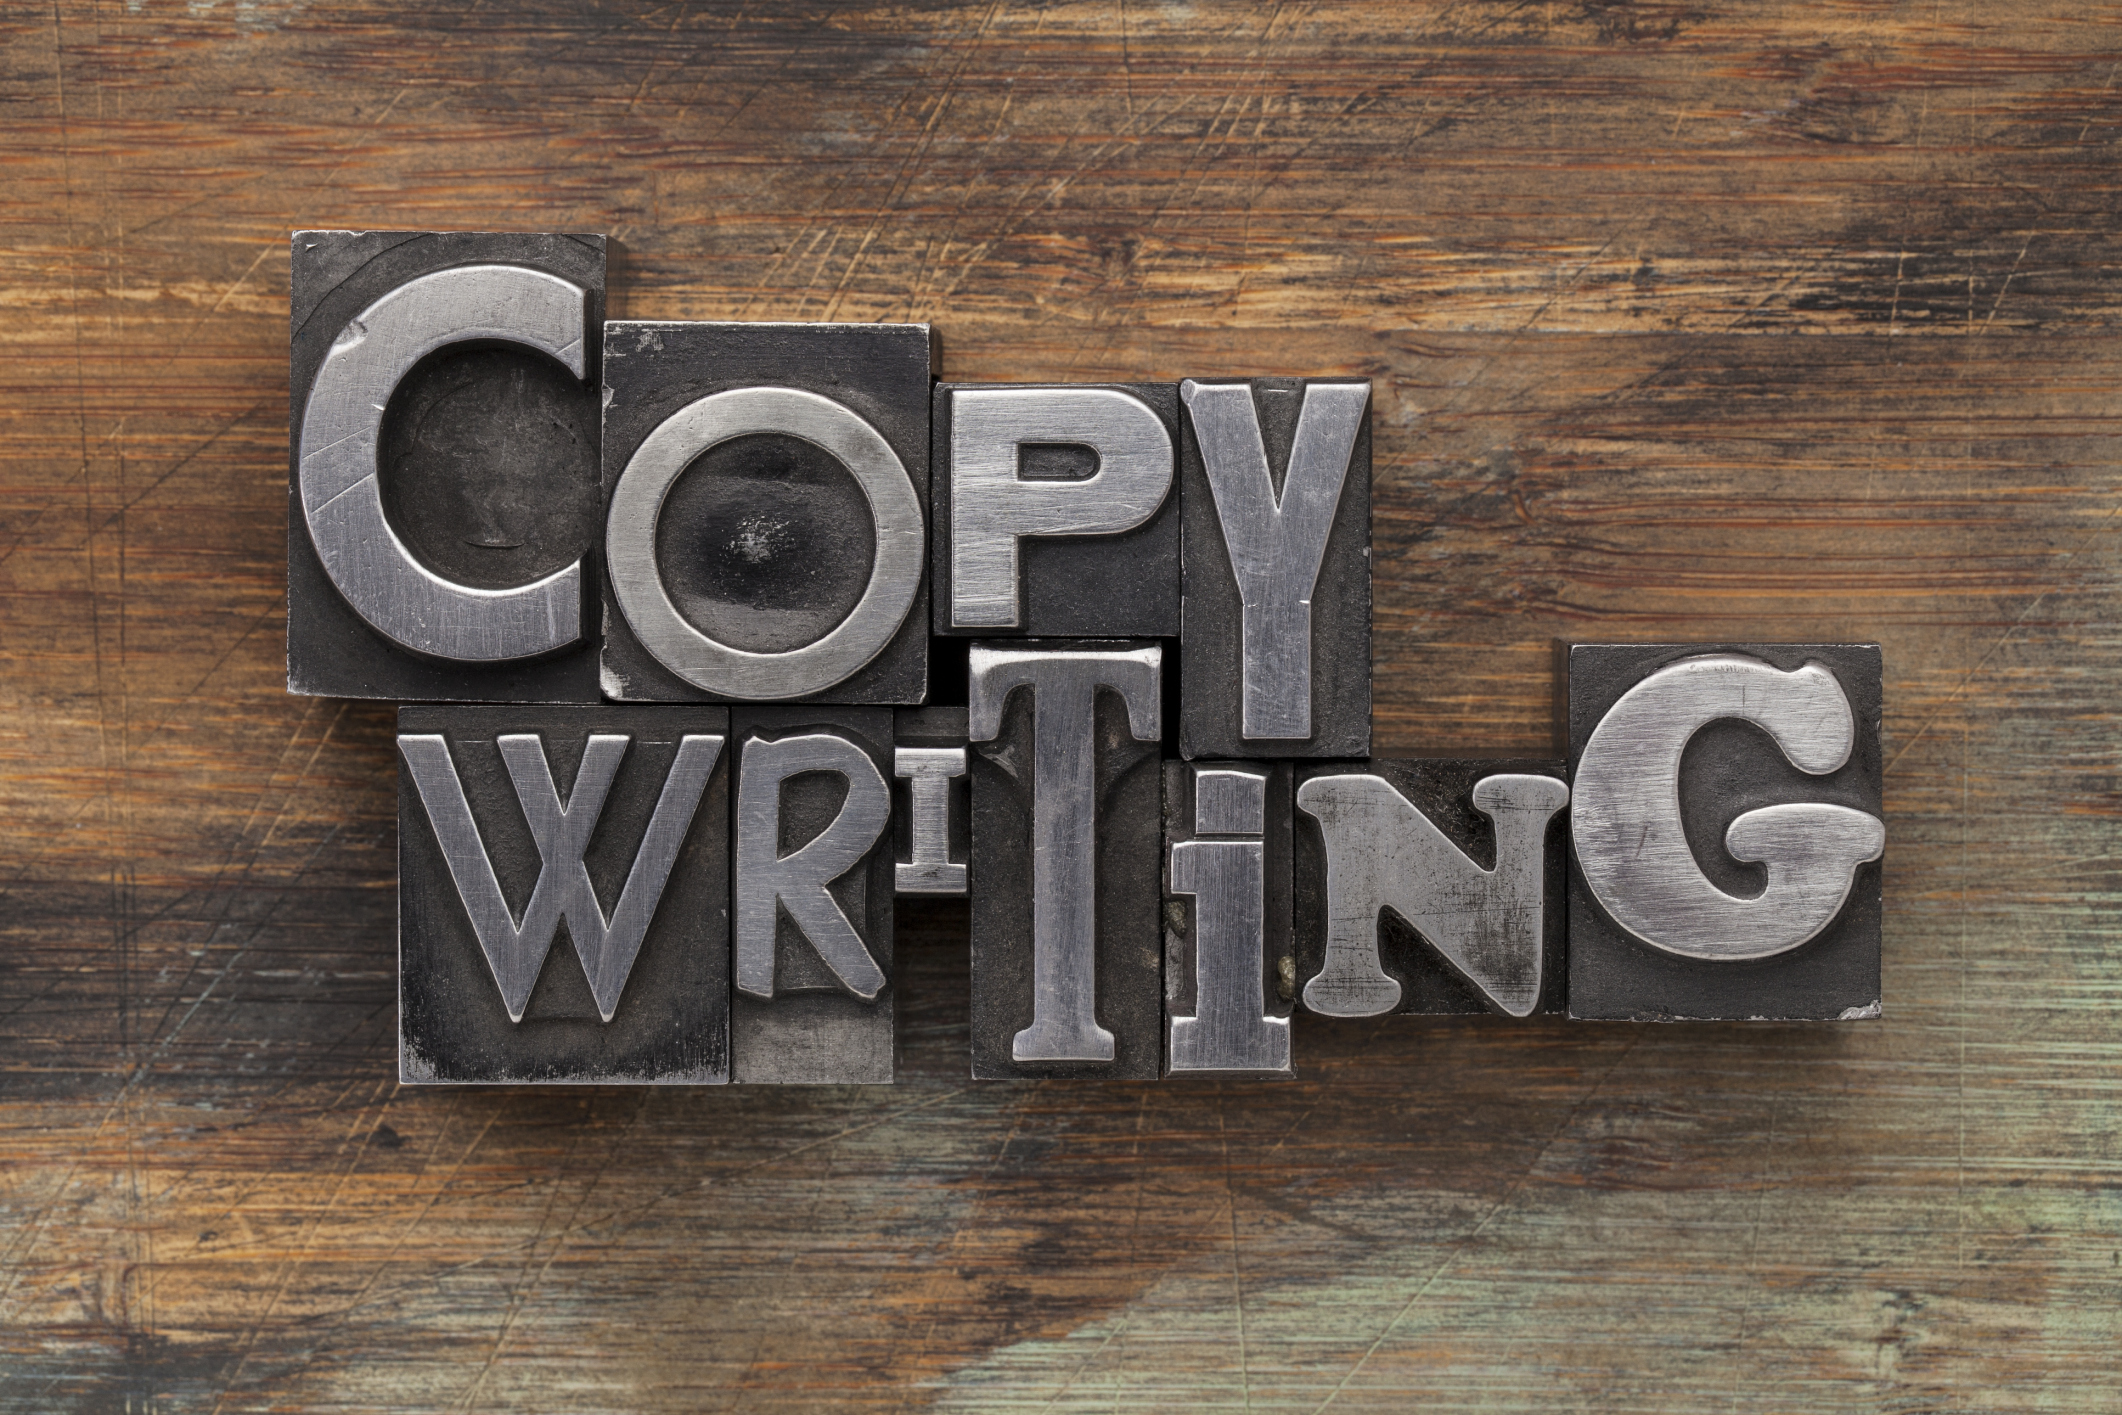 Il copywriting e l’autopsia di un merito